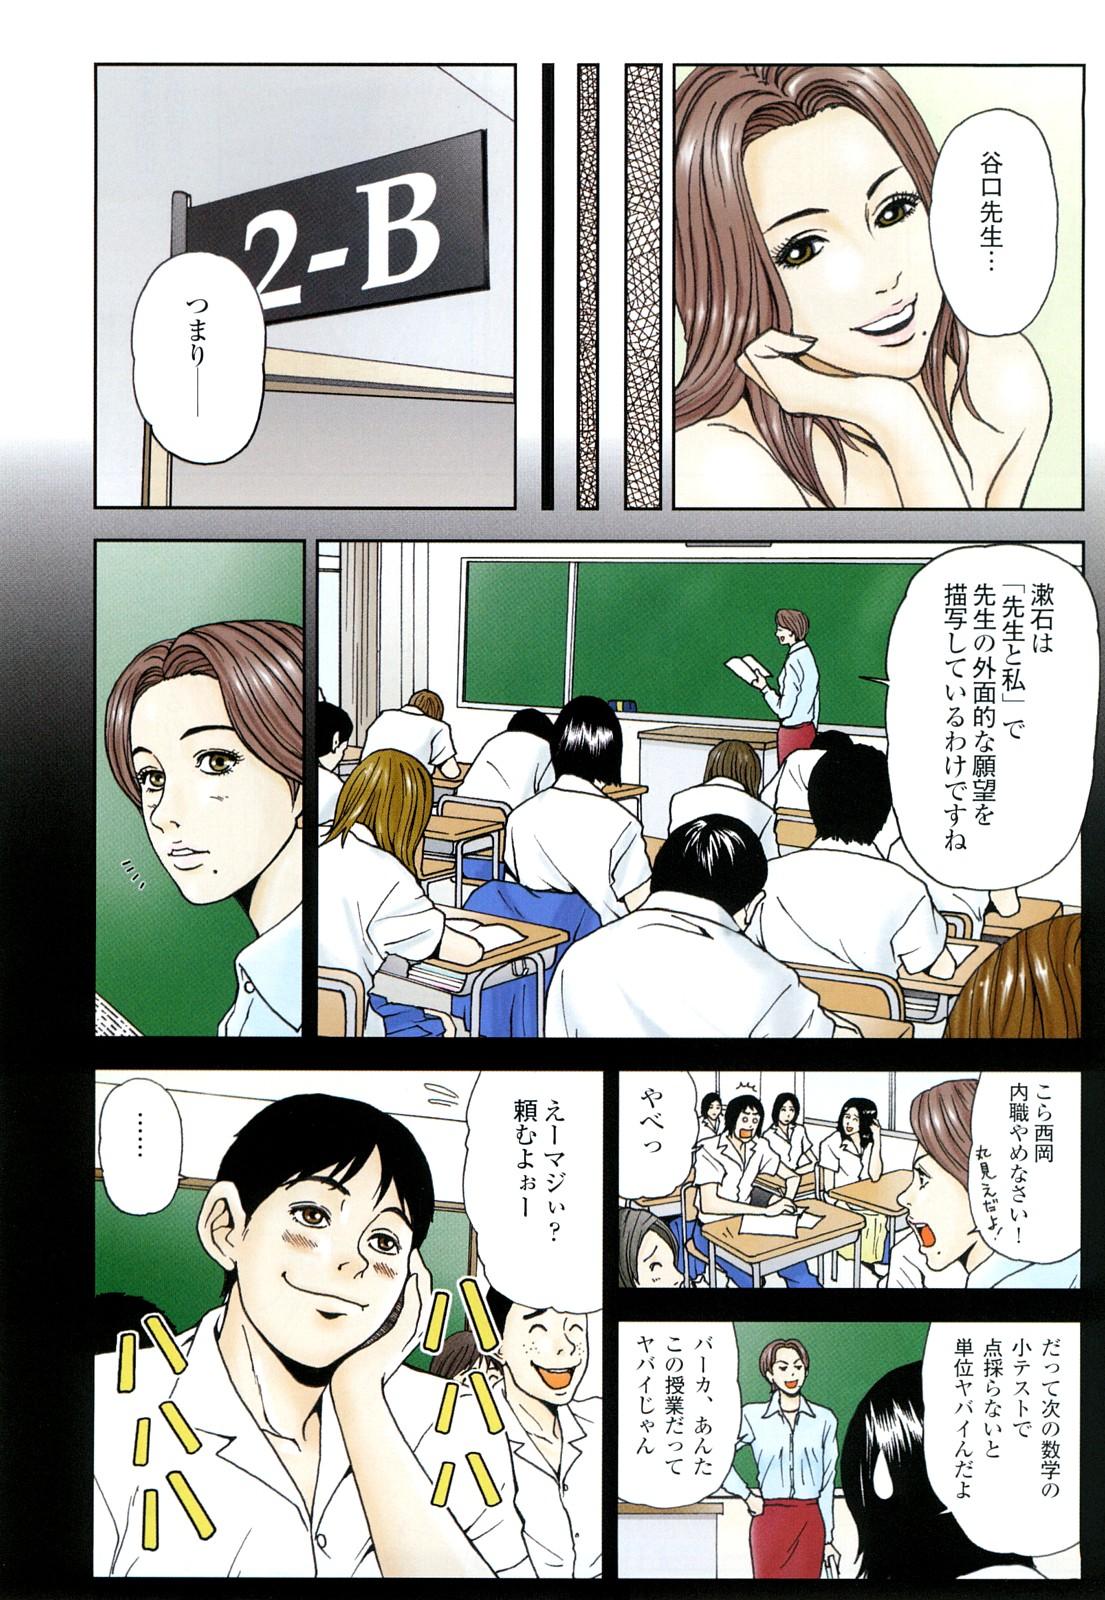 コミック裏モノJAPAN Vol.18 今井のりたつスペシャル号 11